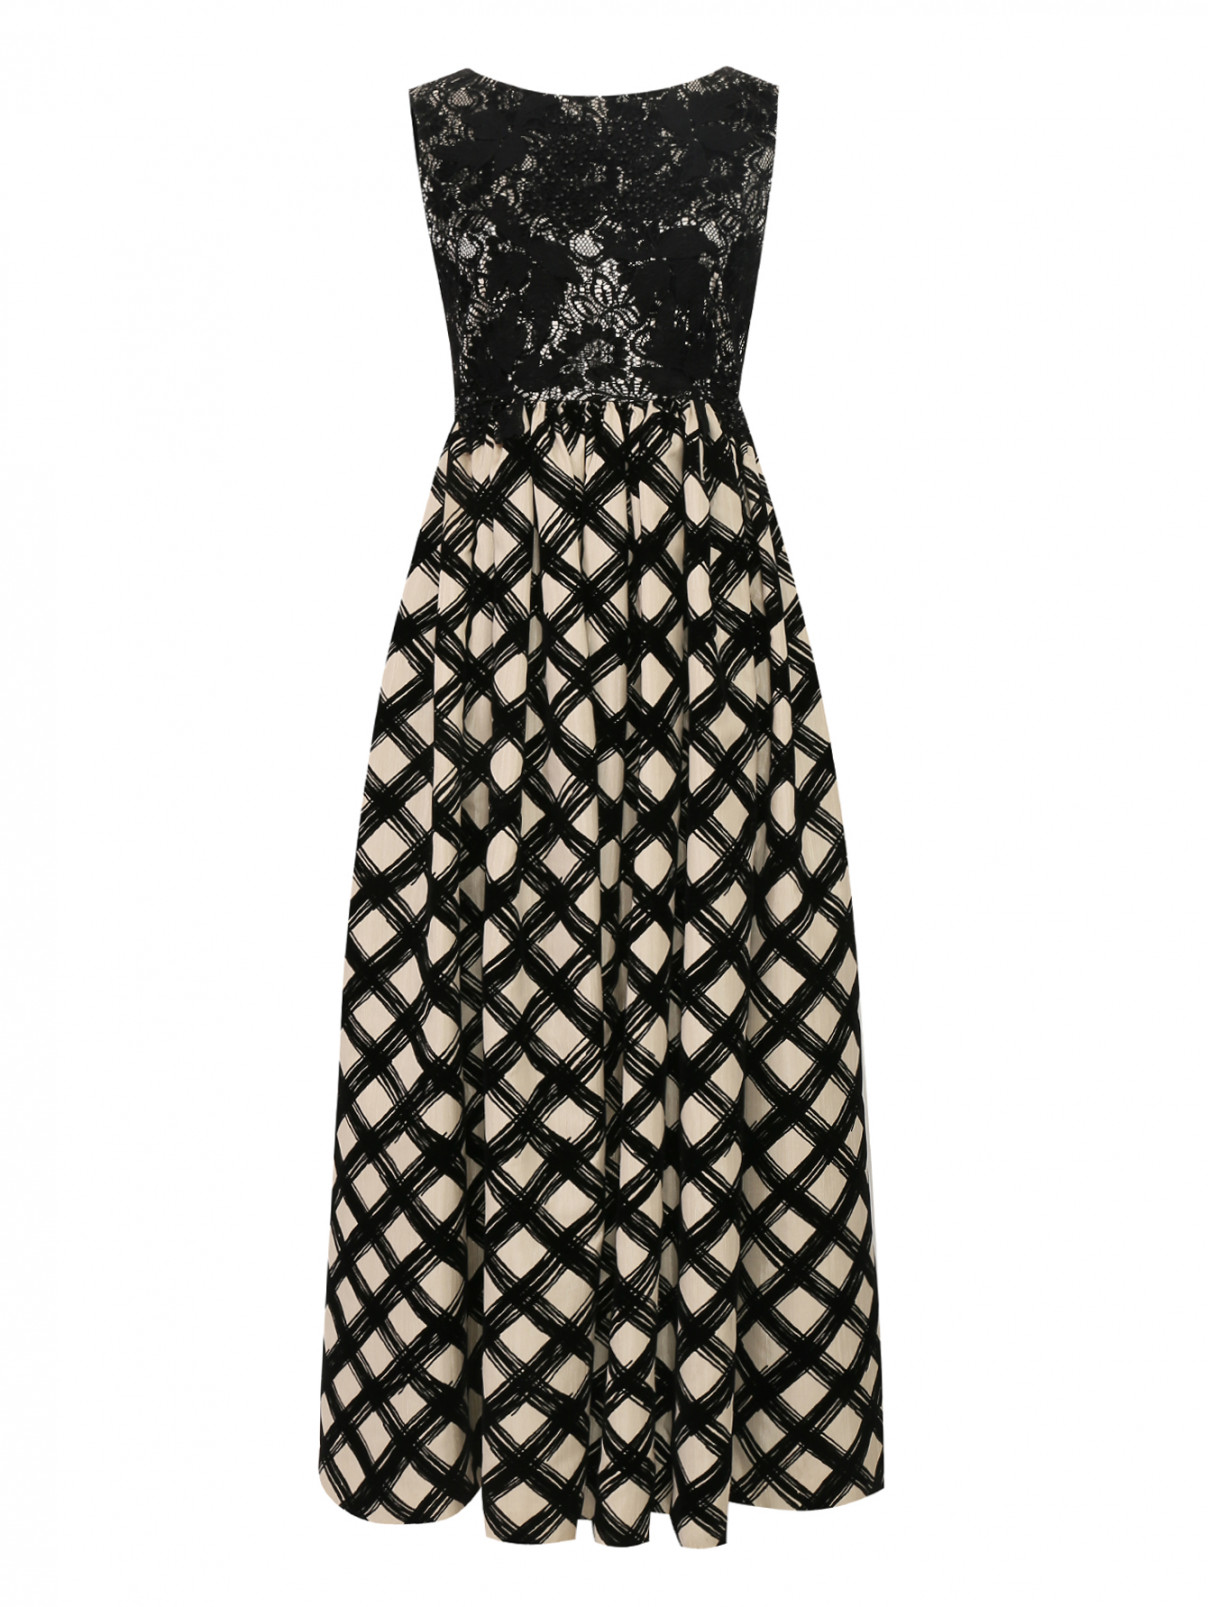 Платье-макси декорированное кружевом и бусинами Antonio Marras  –  Общий вид  – Цвет:  Черный